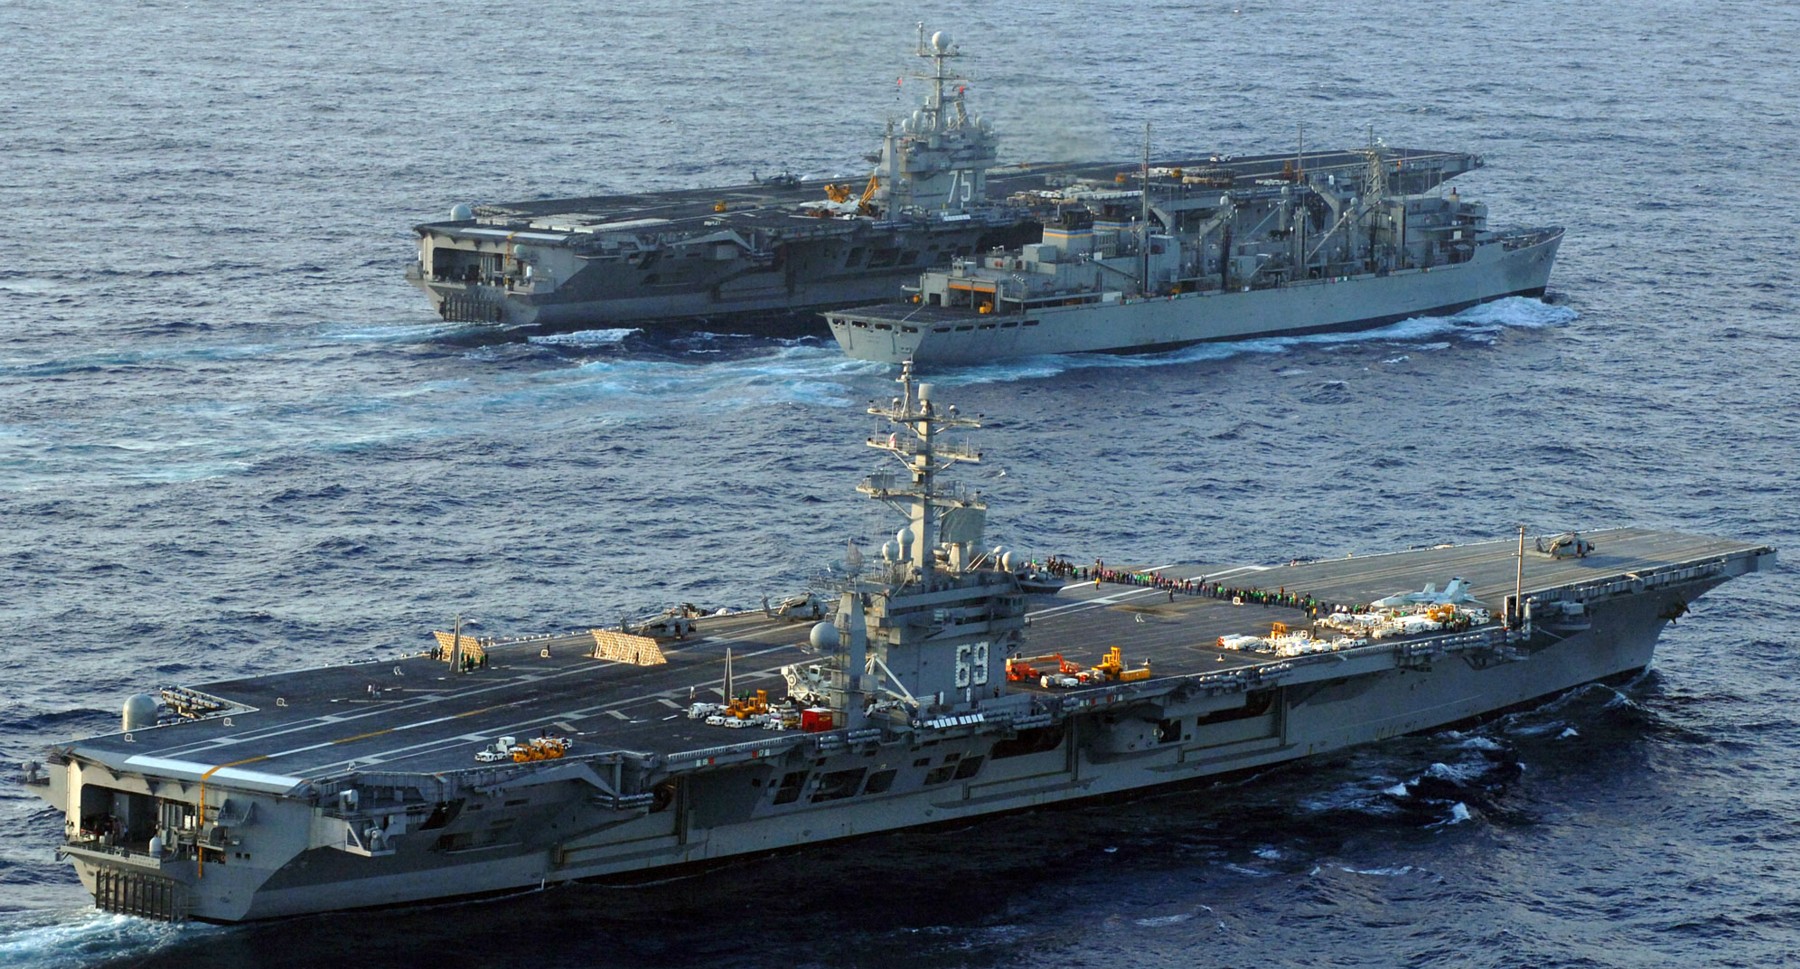 cvn-69 uss dwight d. eisenhower aircraft carrier us navy 218